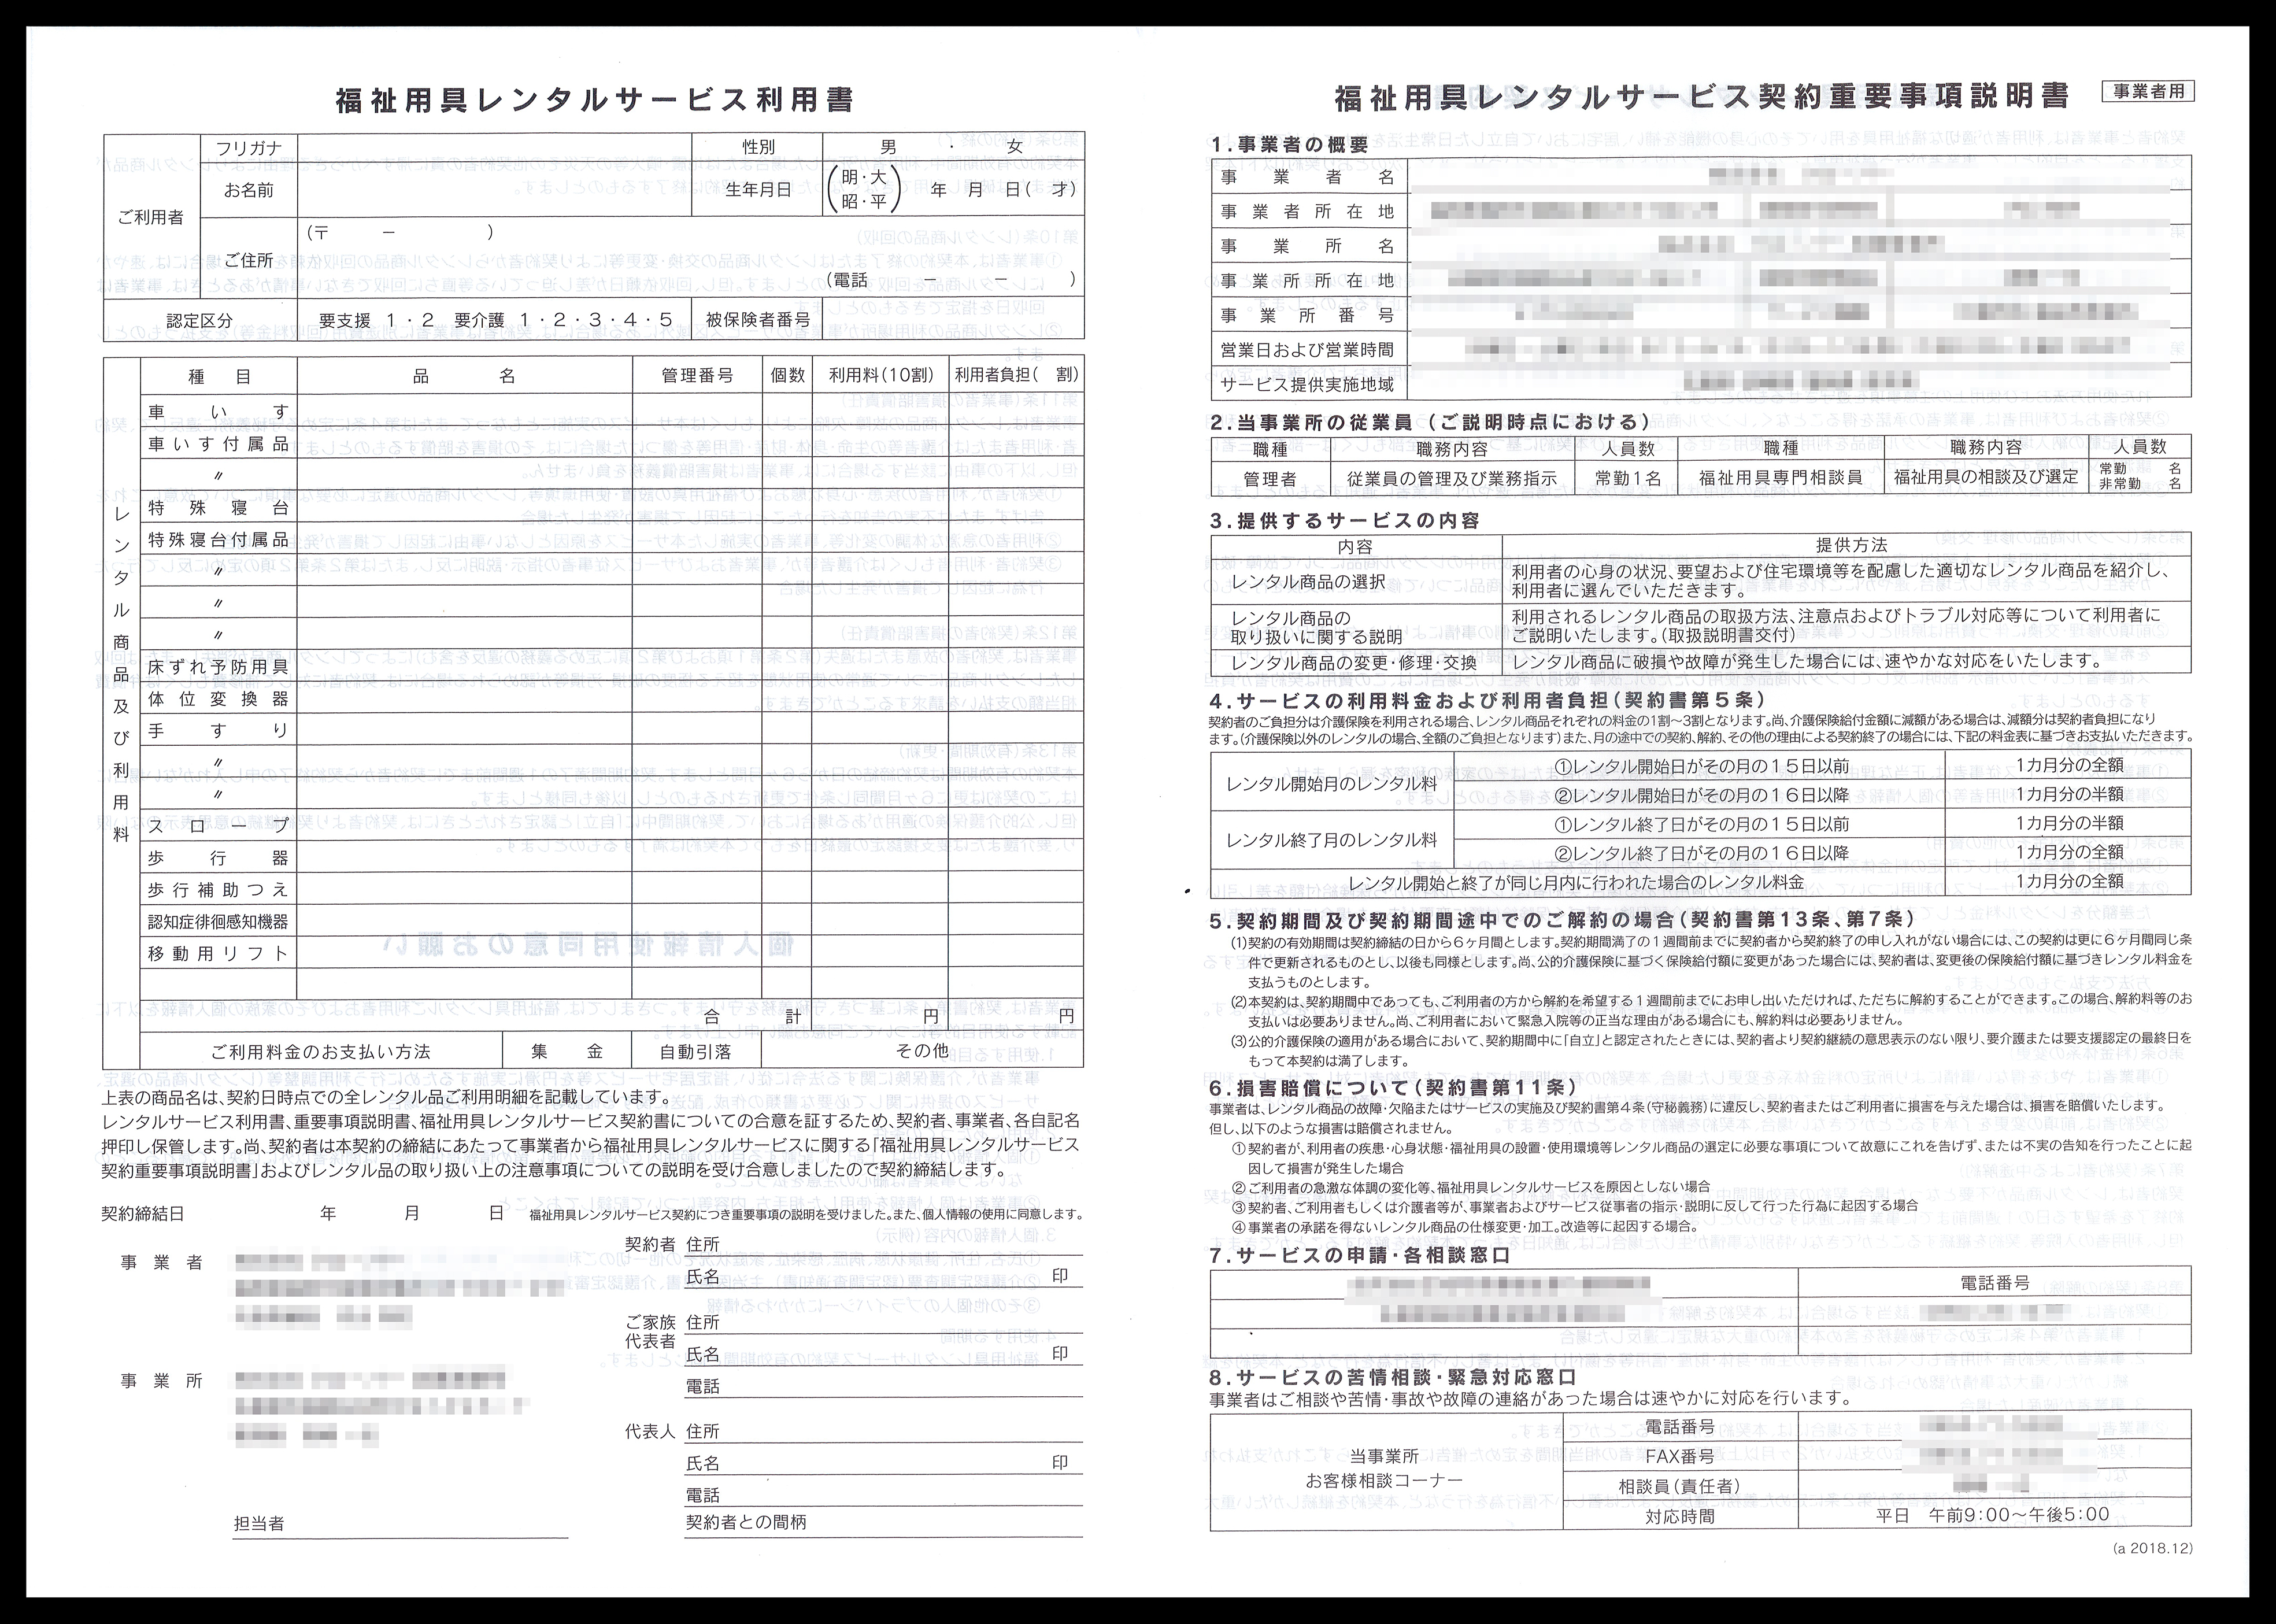 福祉用具レンタルサービス業で使用する福祉用具レンタルサービス利用書（2枚複写50組）の伝票作成実績